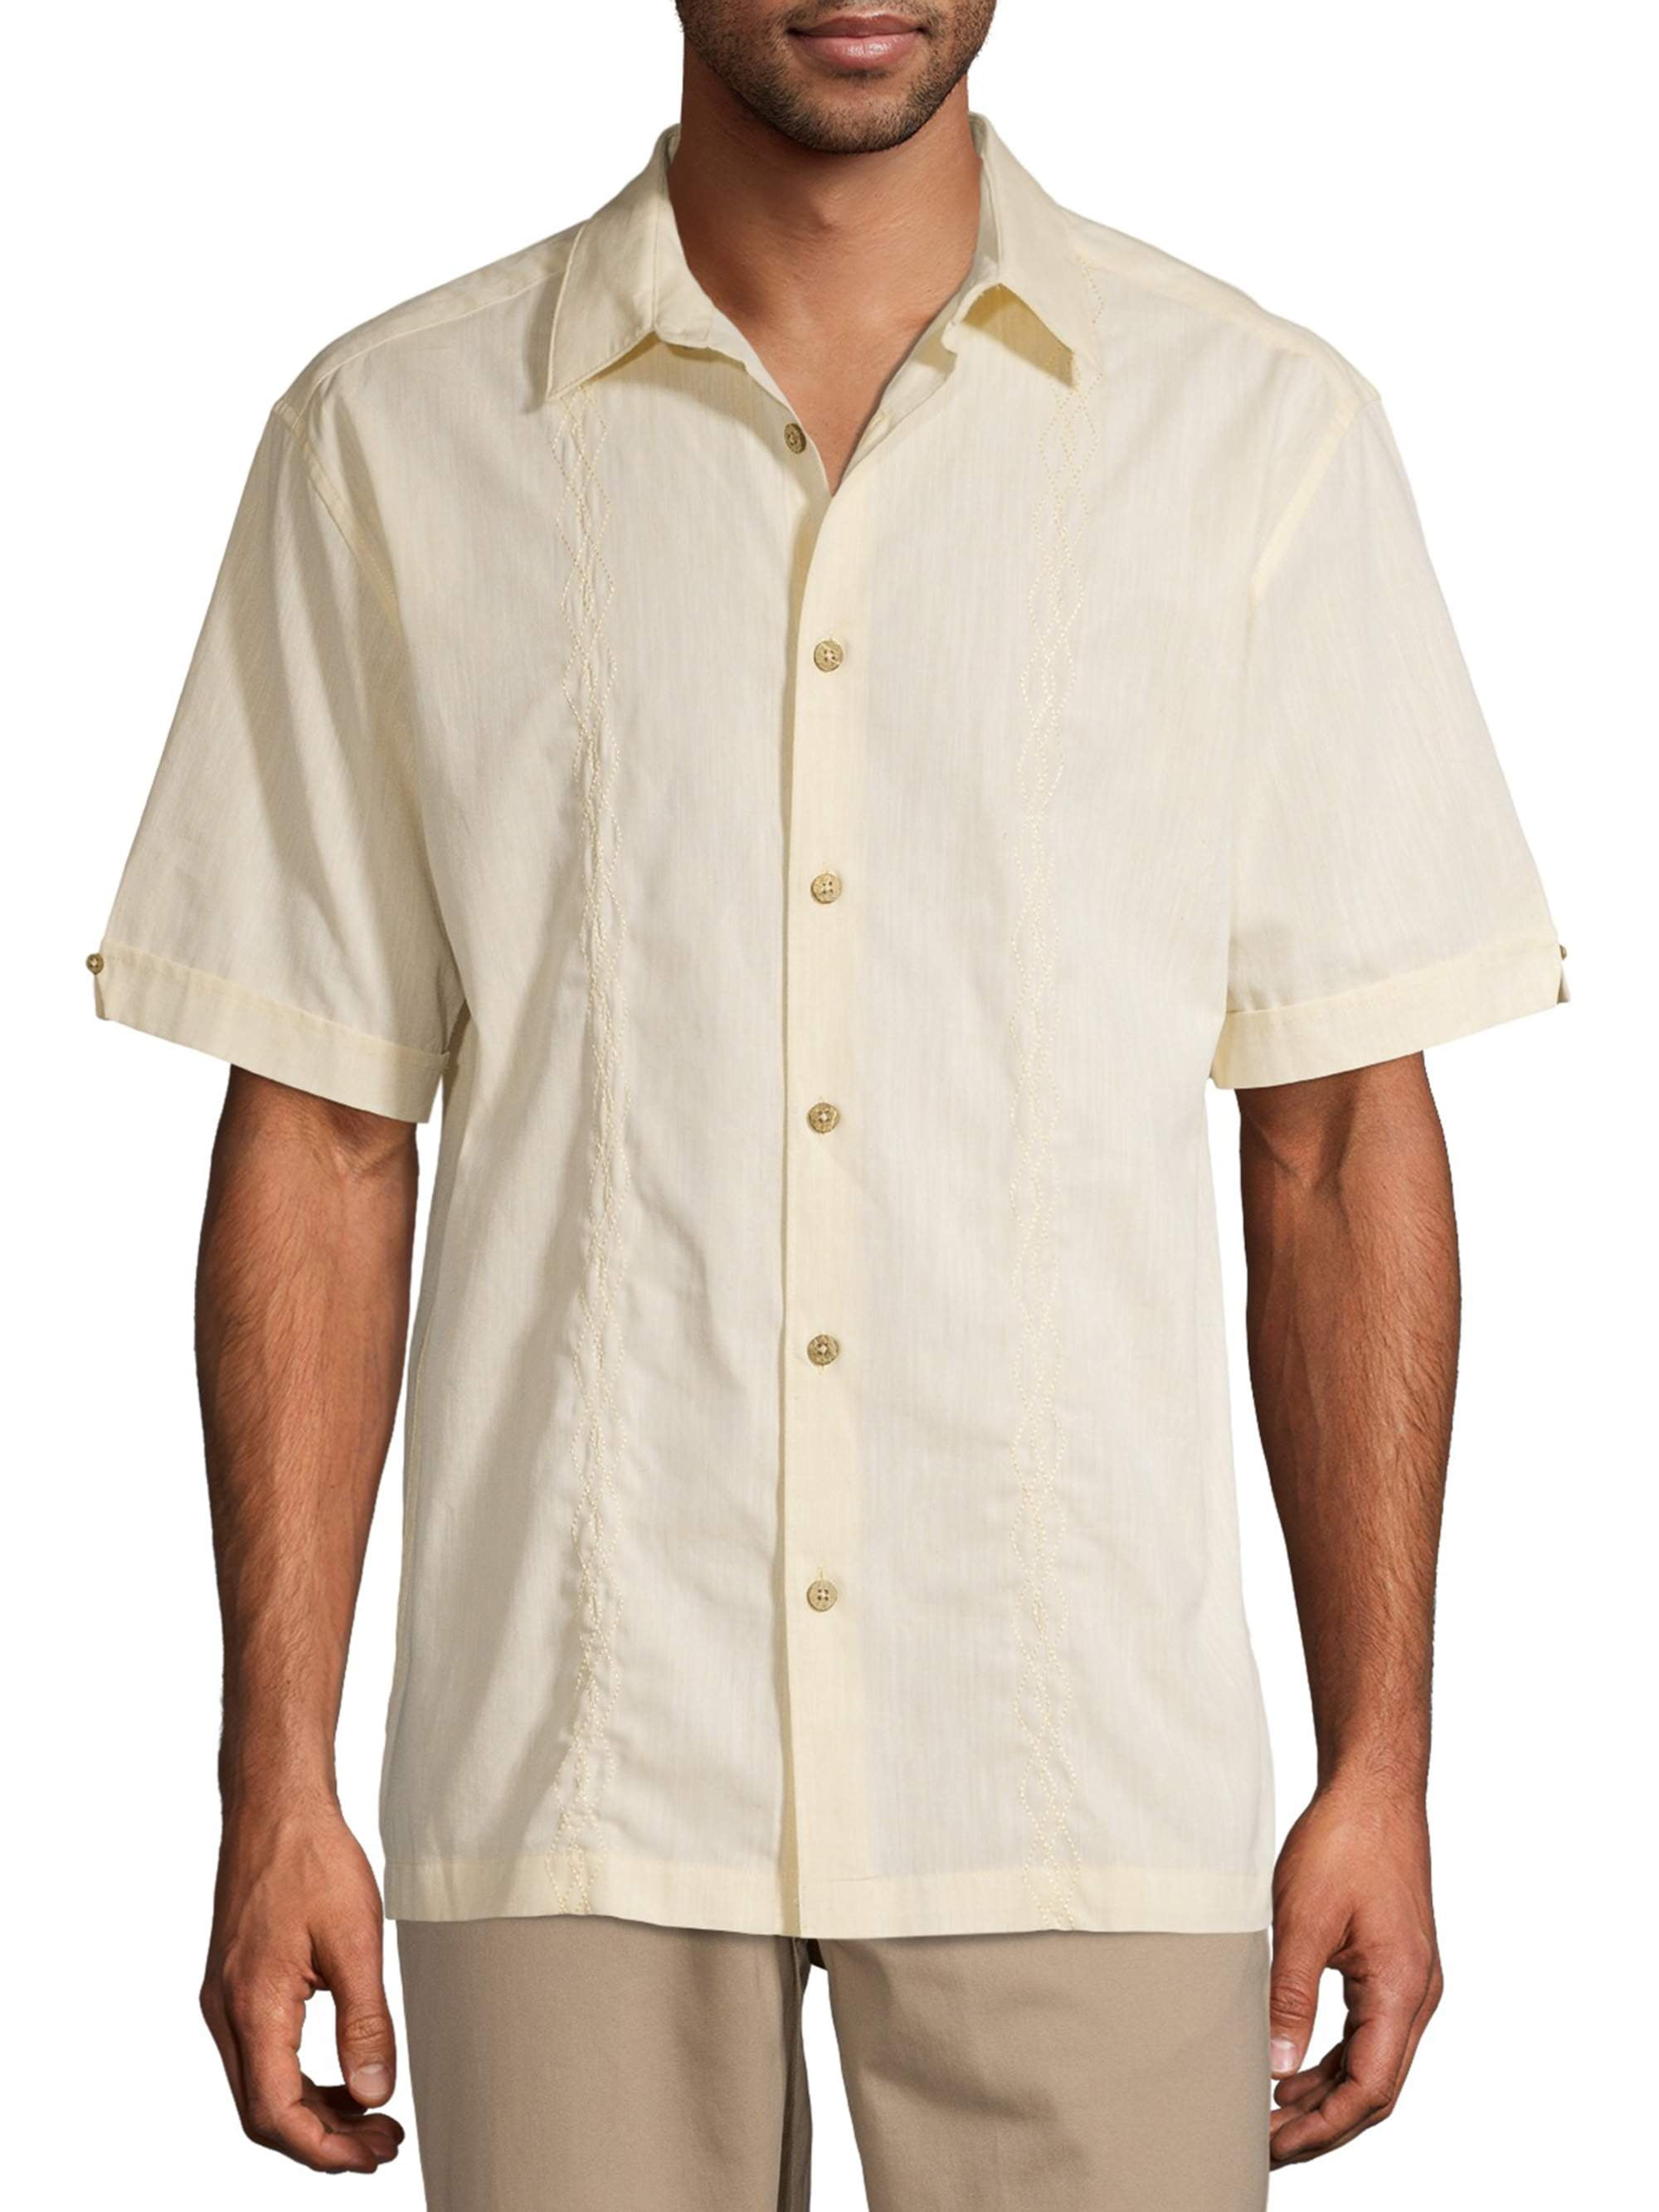 Cafe Luna Men's Short Sleeve Panel Woven Shirt - Walmart.com